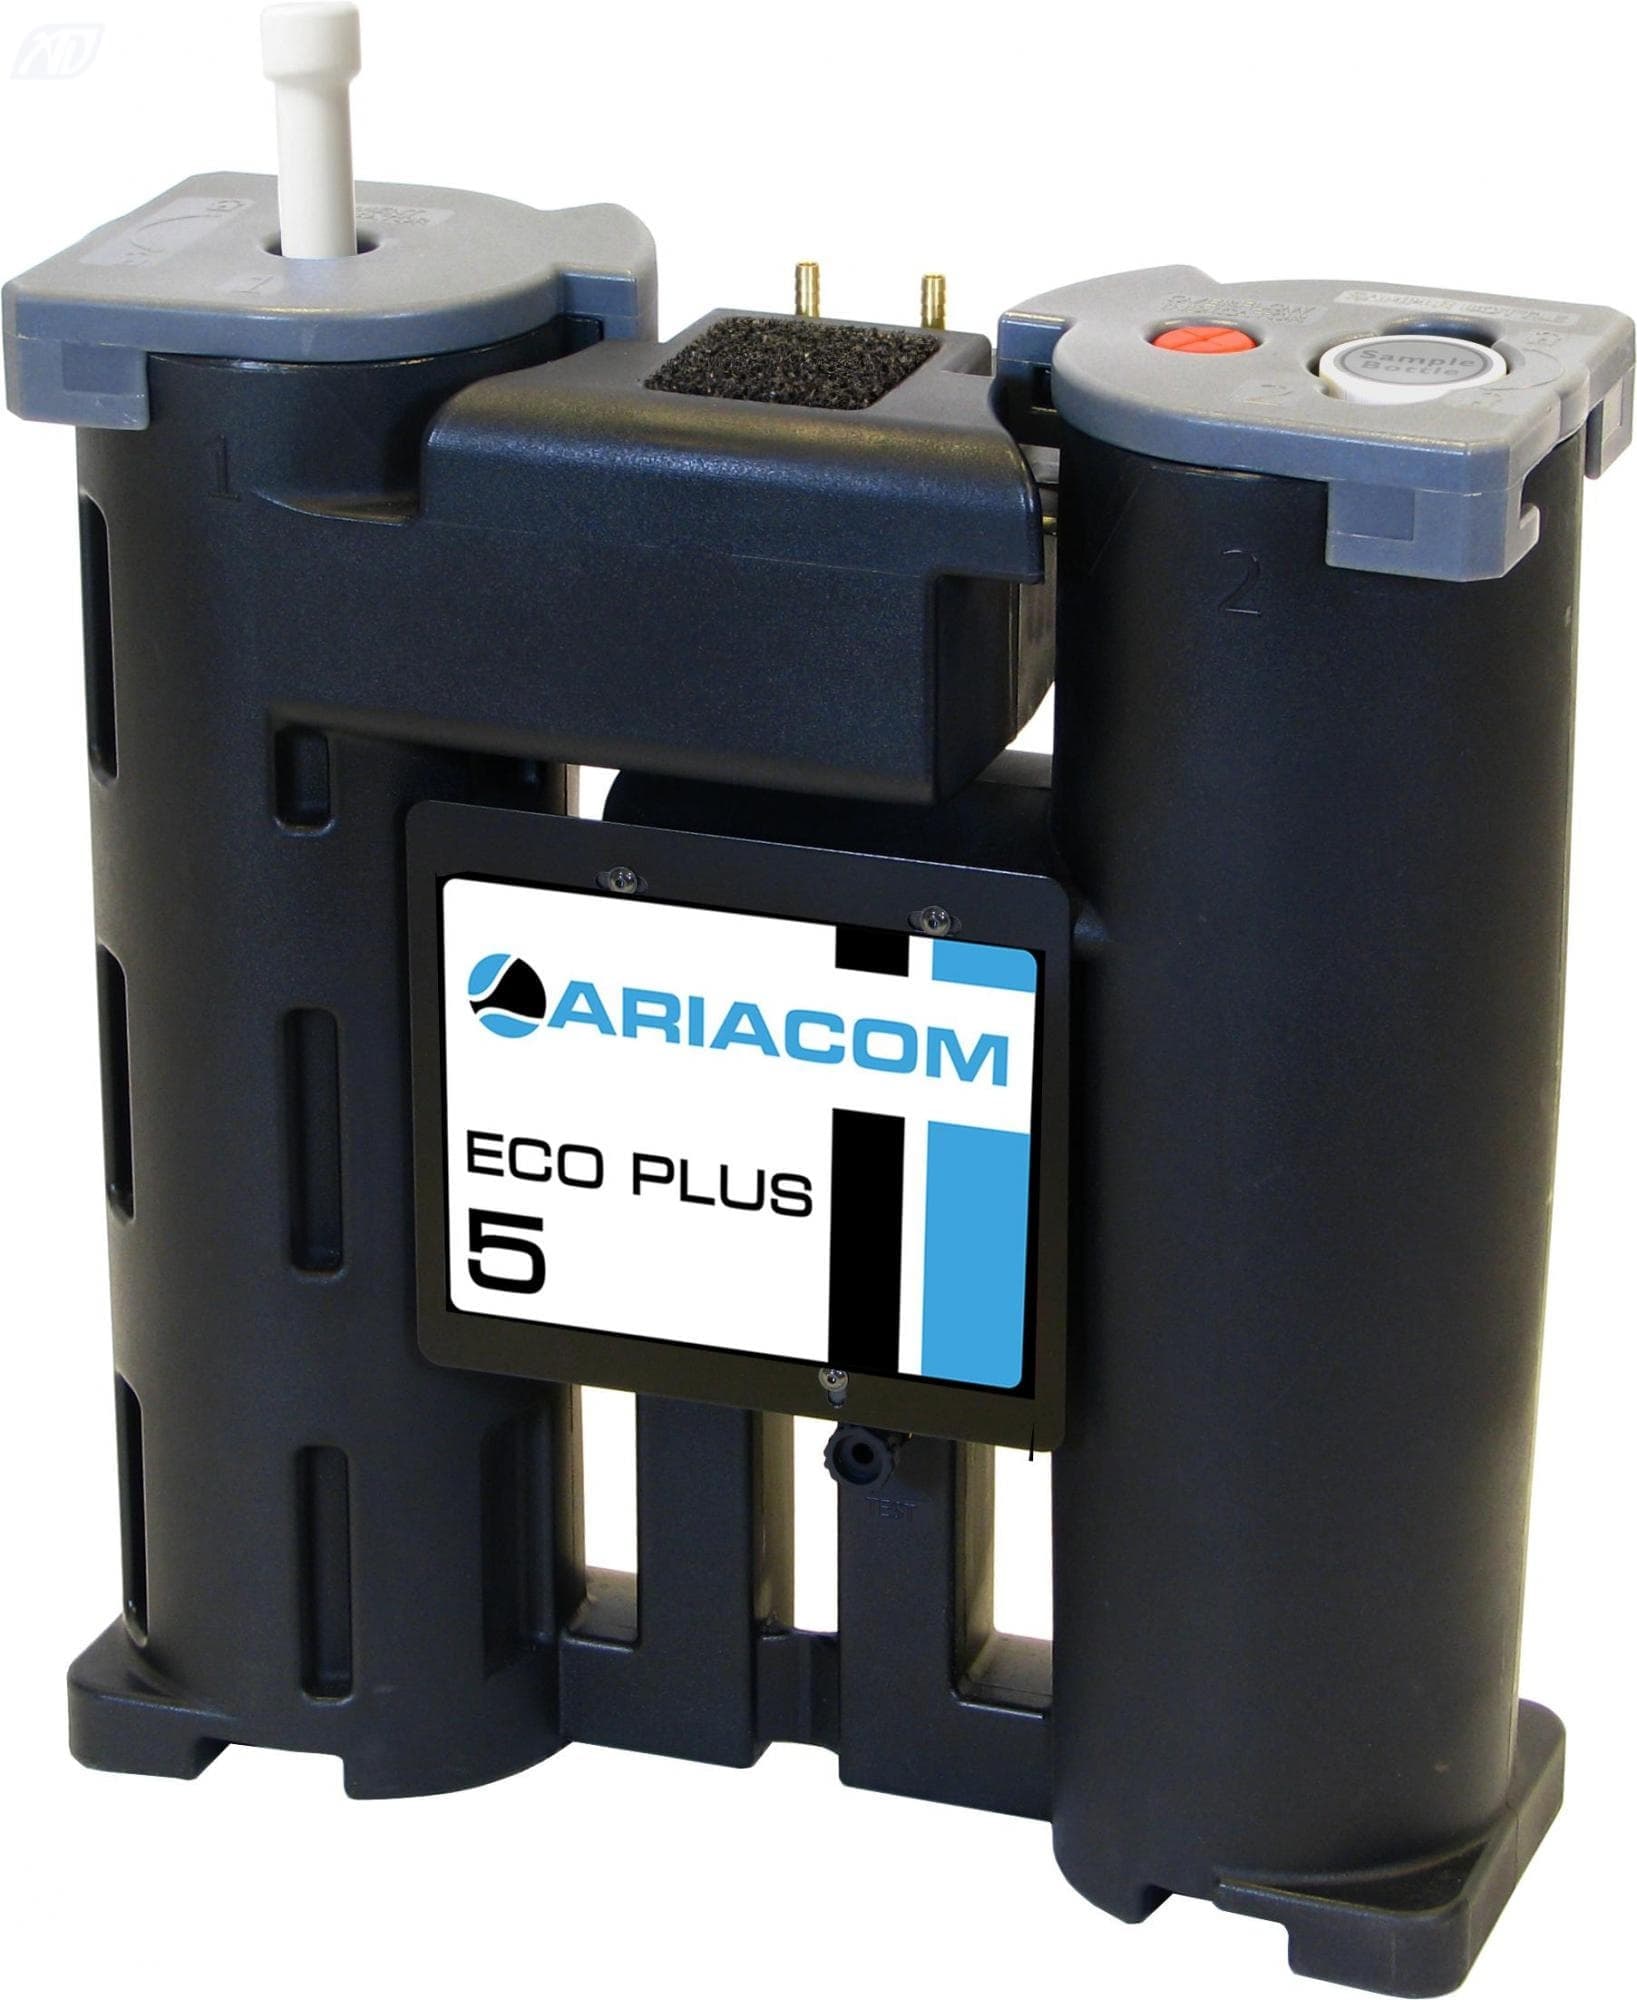 Очистки конденсата. Конденсатоотводчик уровневый ARIACOM ACD-le100 24v. ARIACOM сепаратор масла. Блок очистки конденсата для компрессора. Система сбора и очистки конденсата.